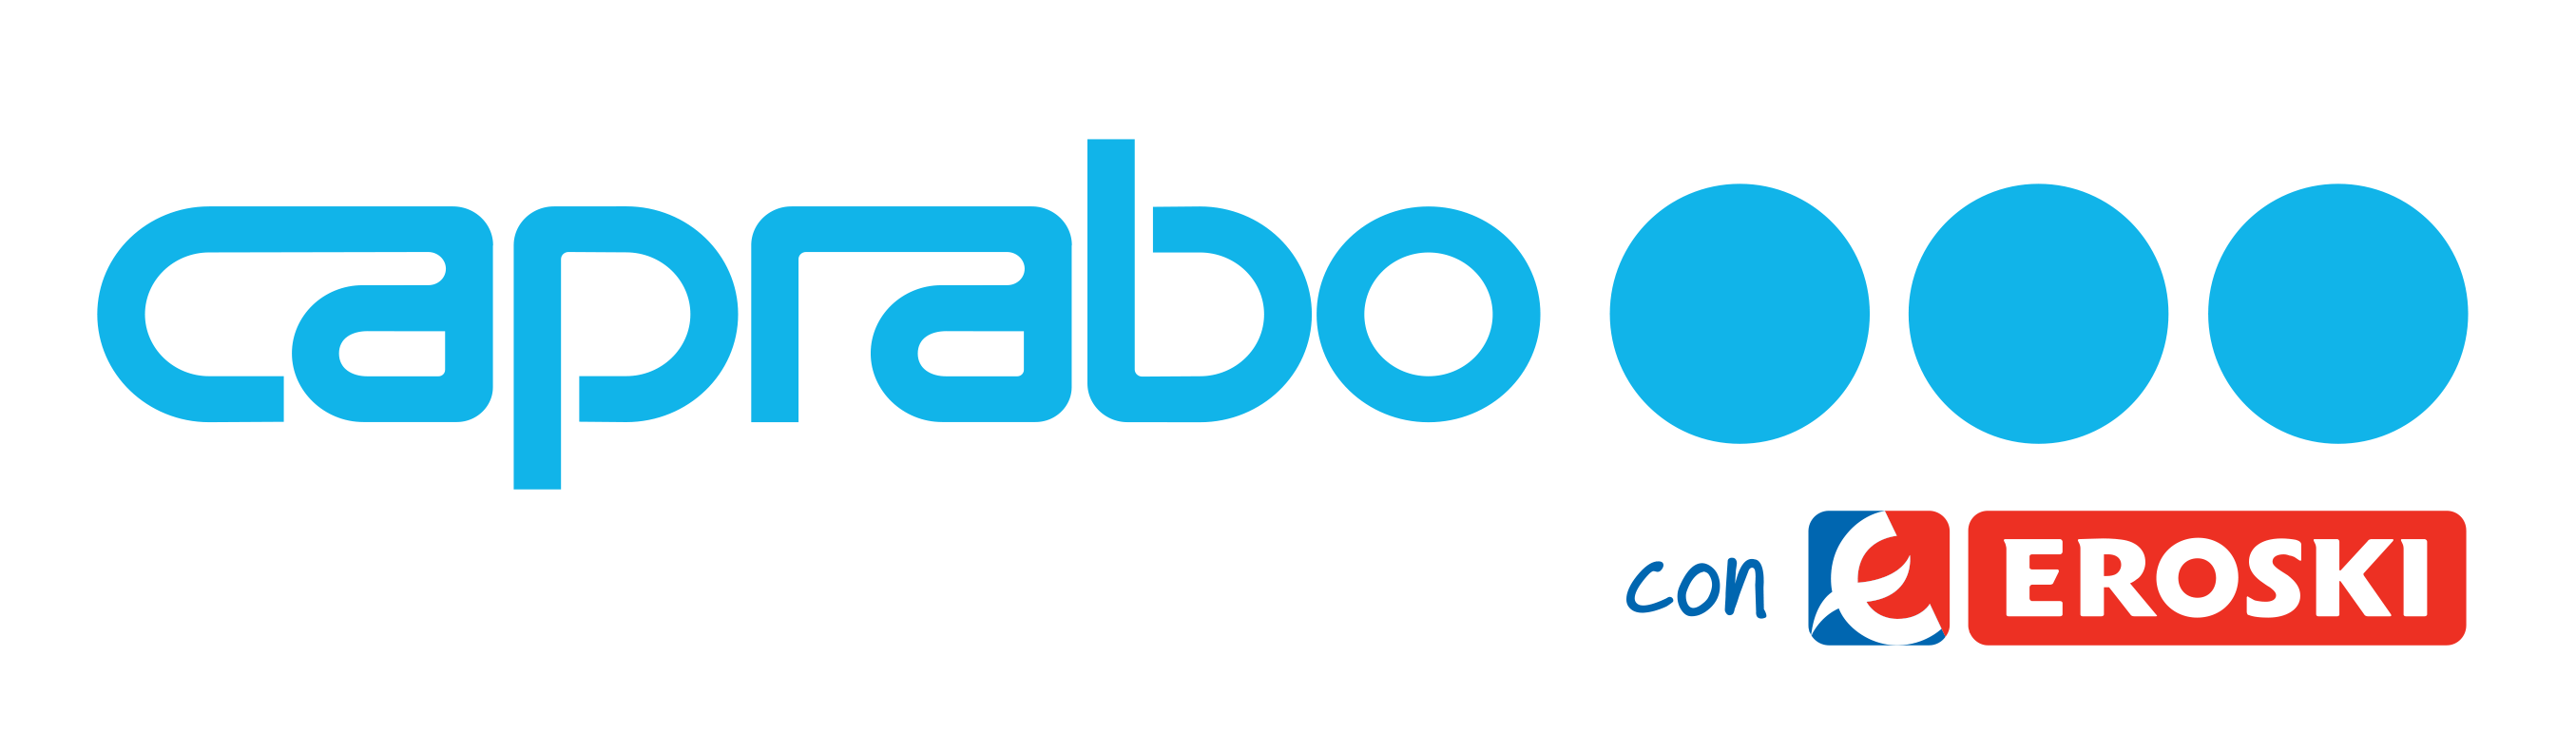 Caprabo Brand Logo